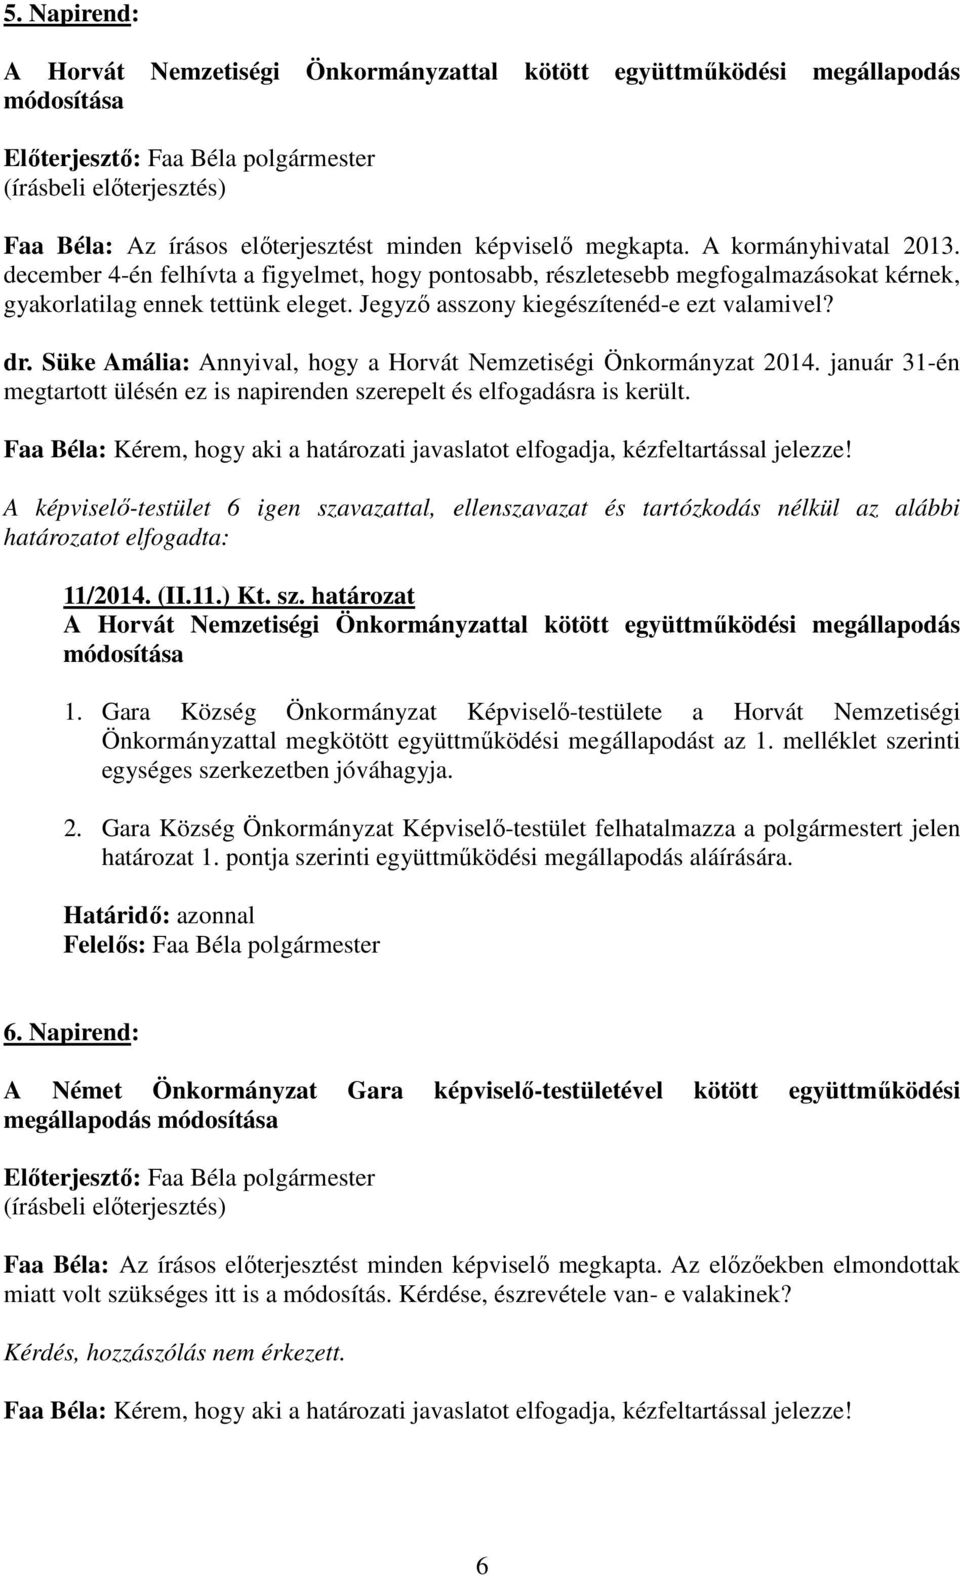 Süke Amália: Annyival, hogy a Horvát Nemzetiségi Önkormányzat 2014. január 31-én megtartott ülésén ez is napirenden szerepelt és elfogadásra is került.